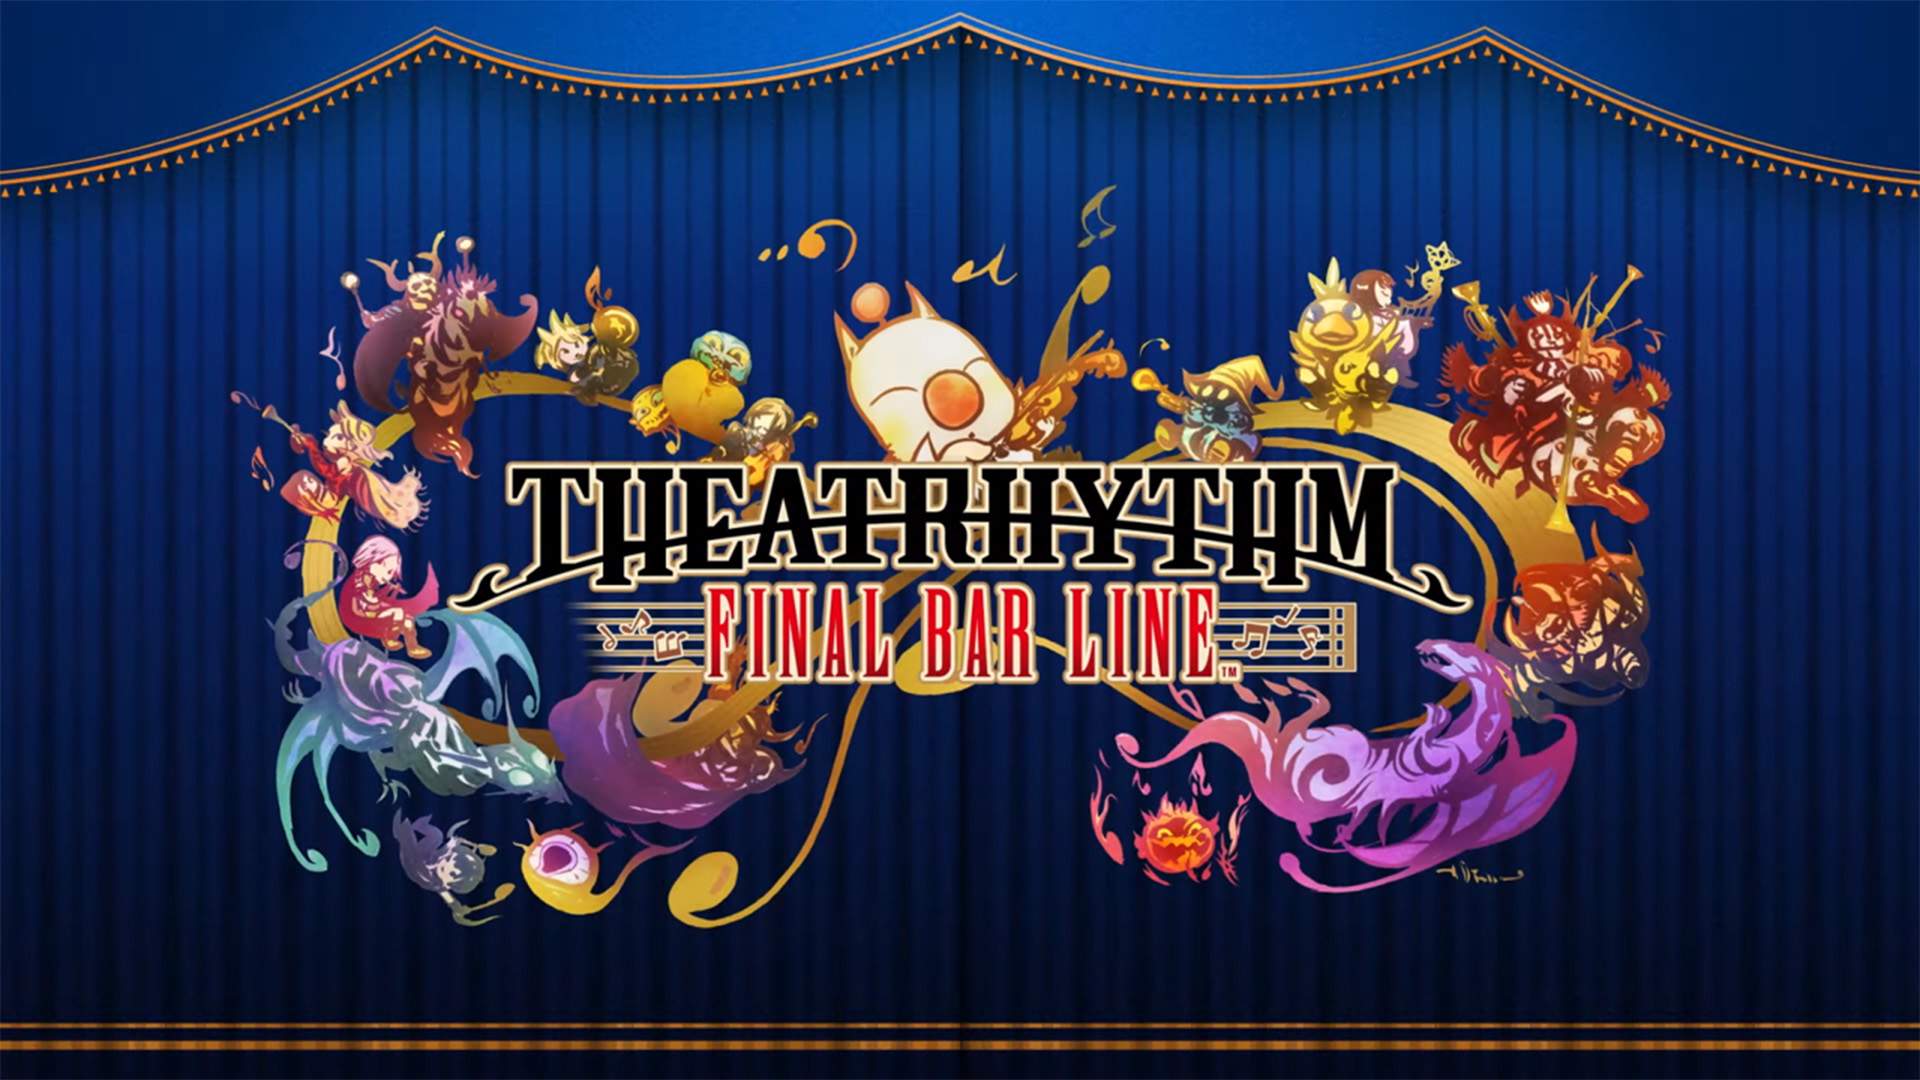 Le logo du jeu devant un rideau bleu et or, entouré de notes de musique et de chibis du jeu